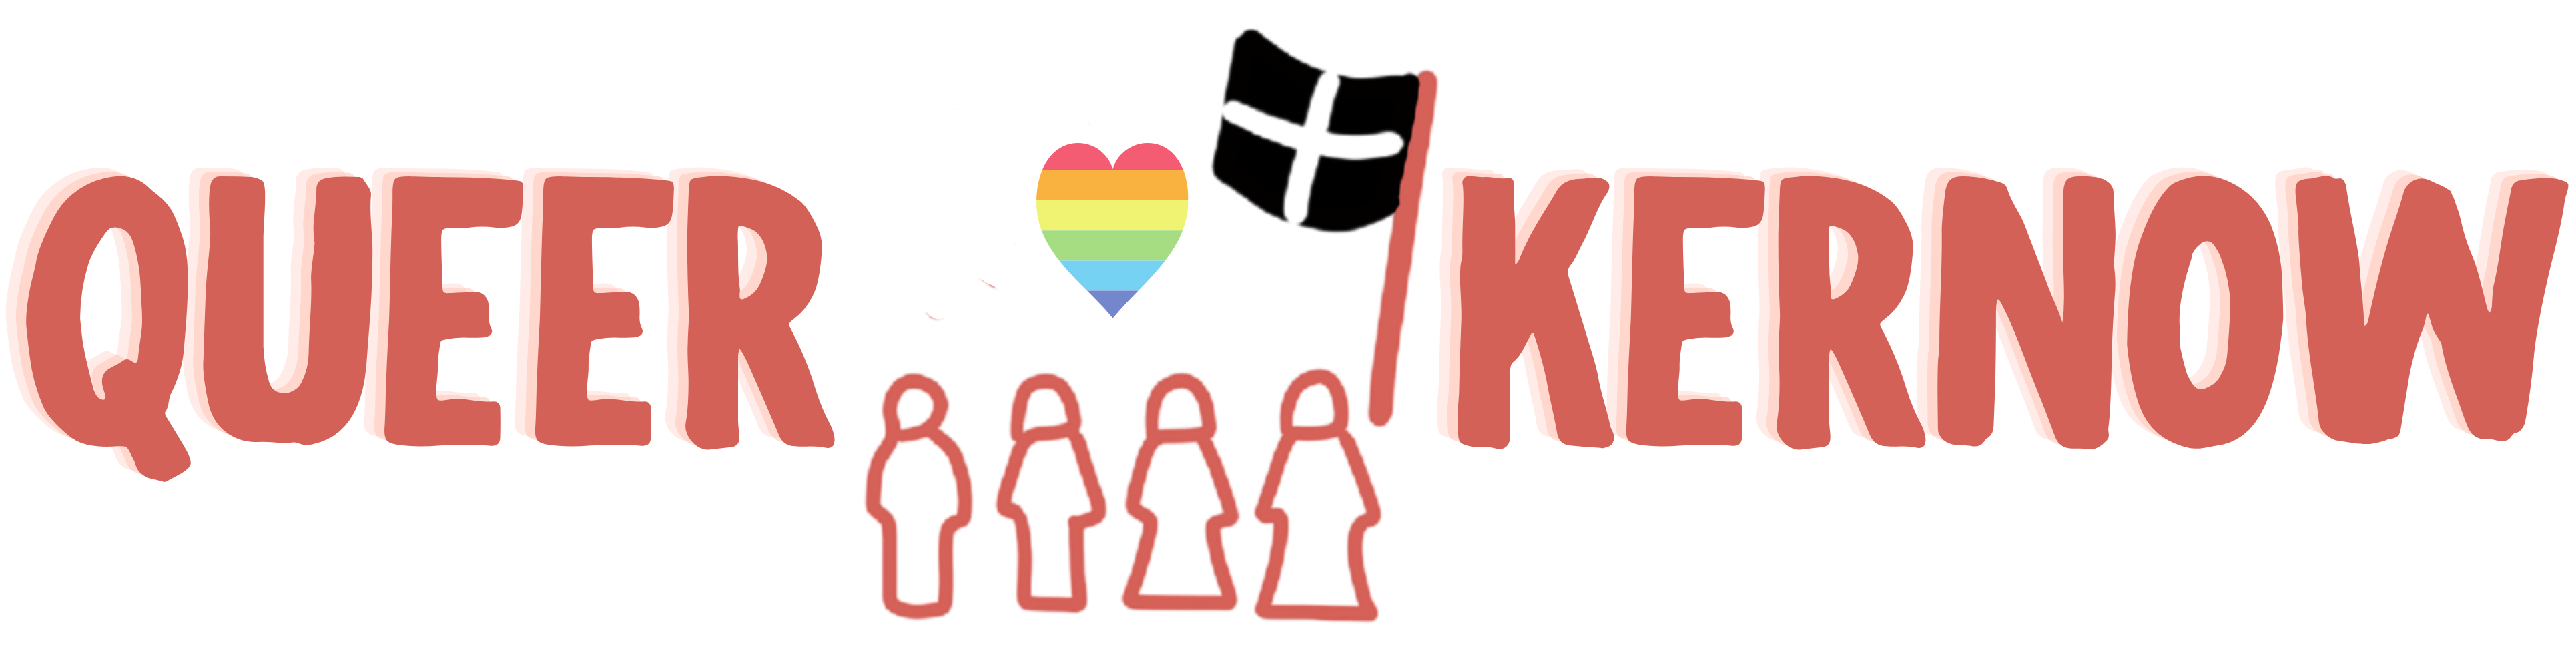 Queer Kernow